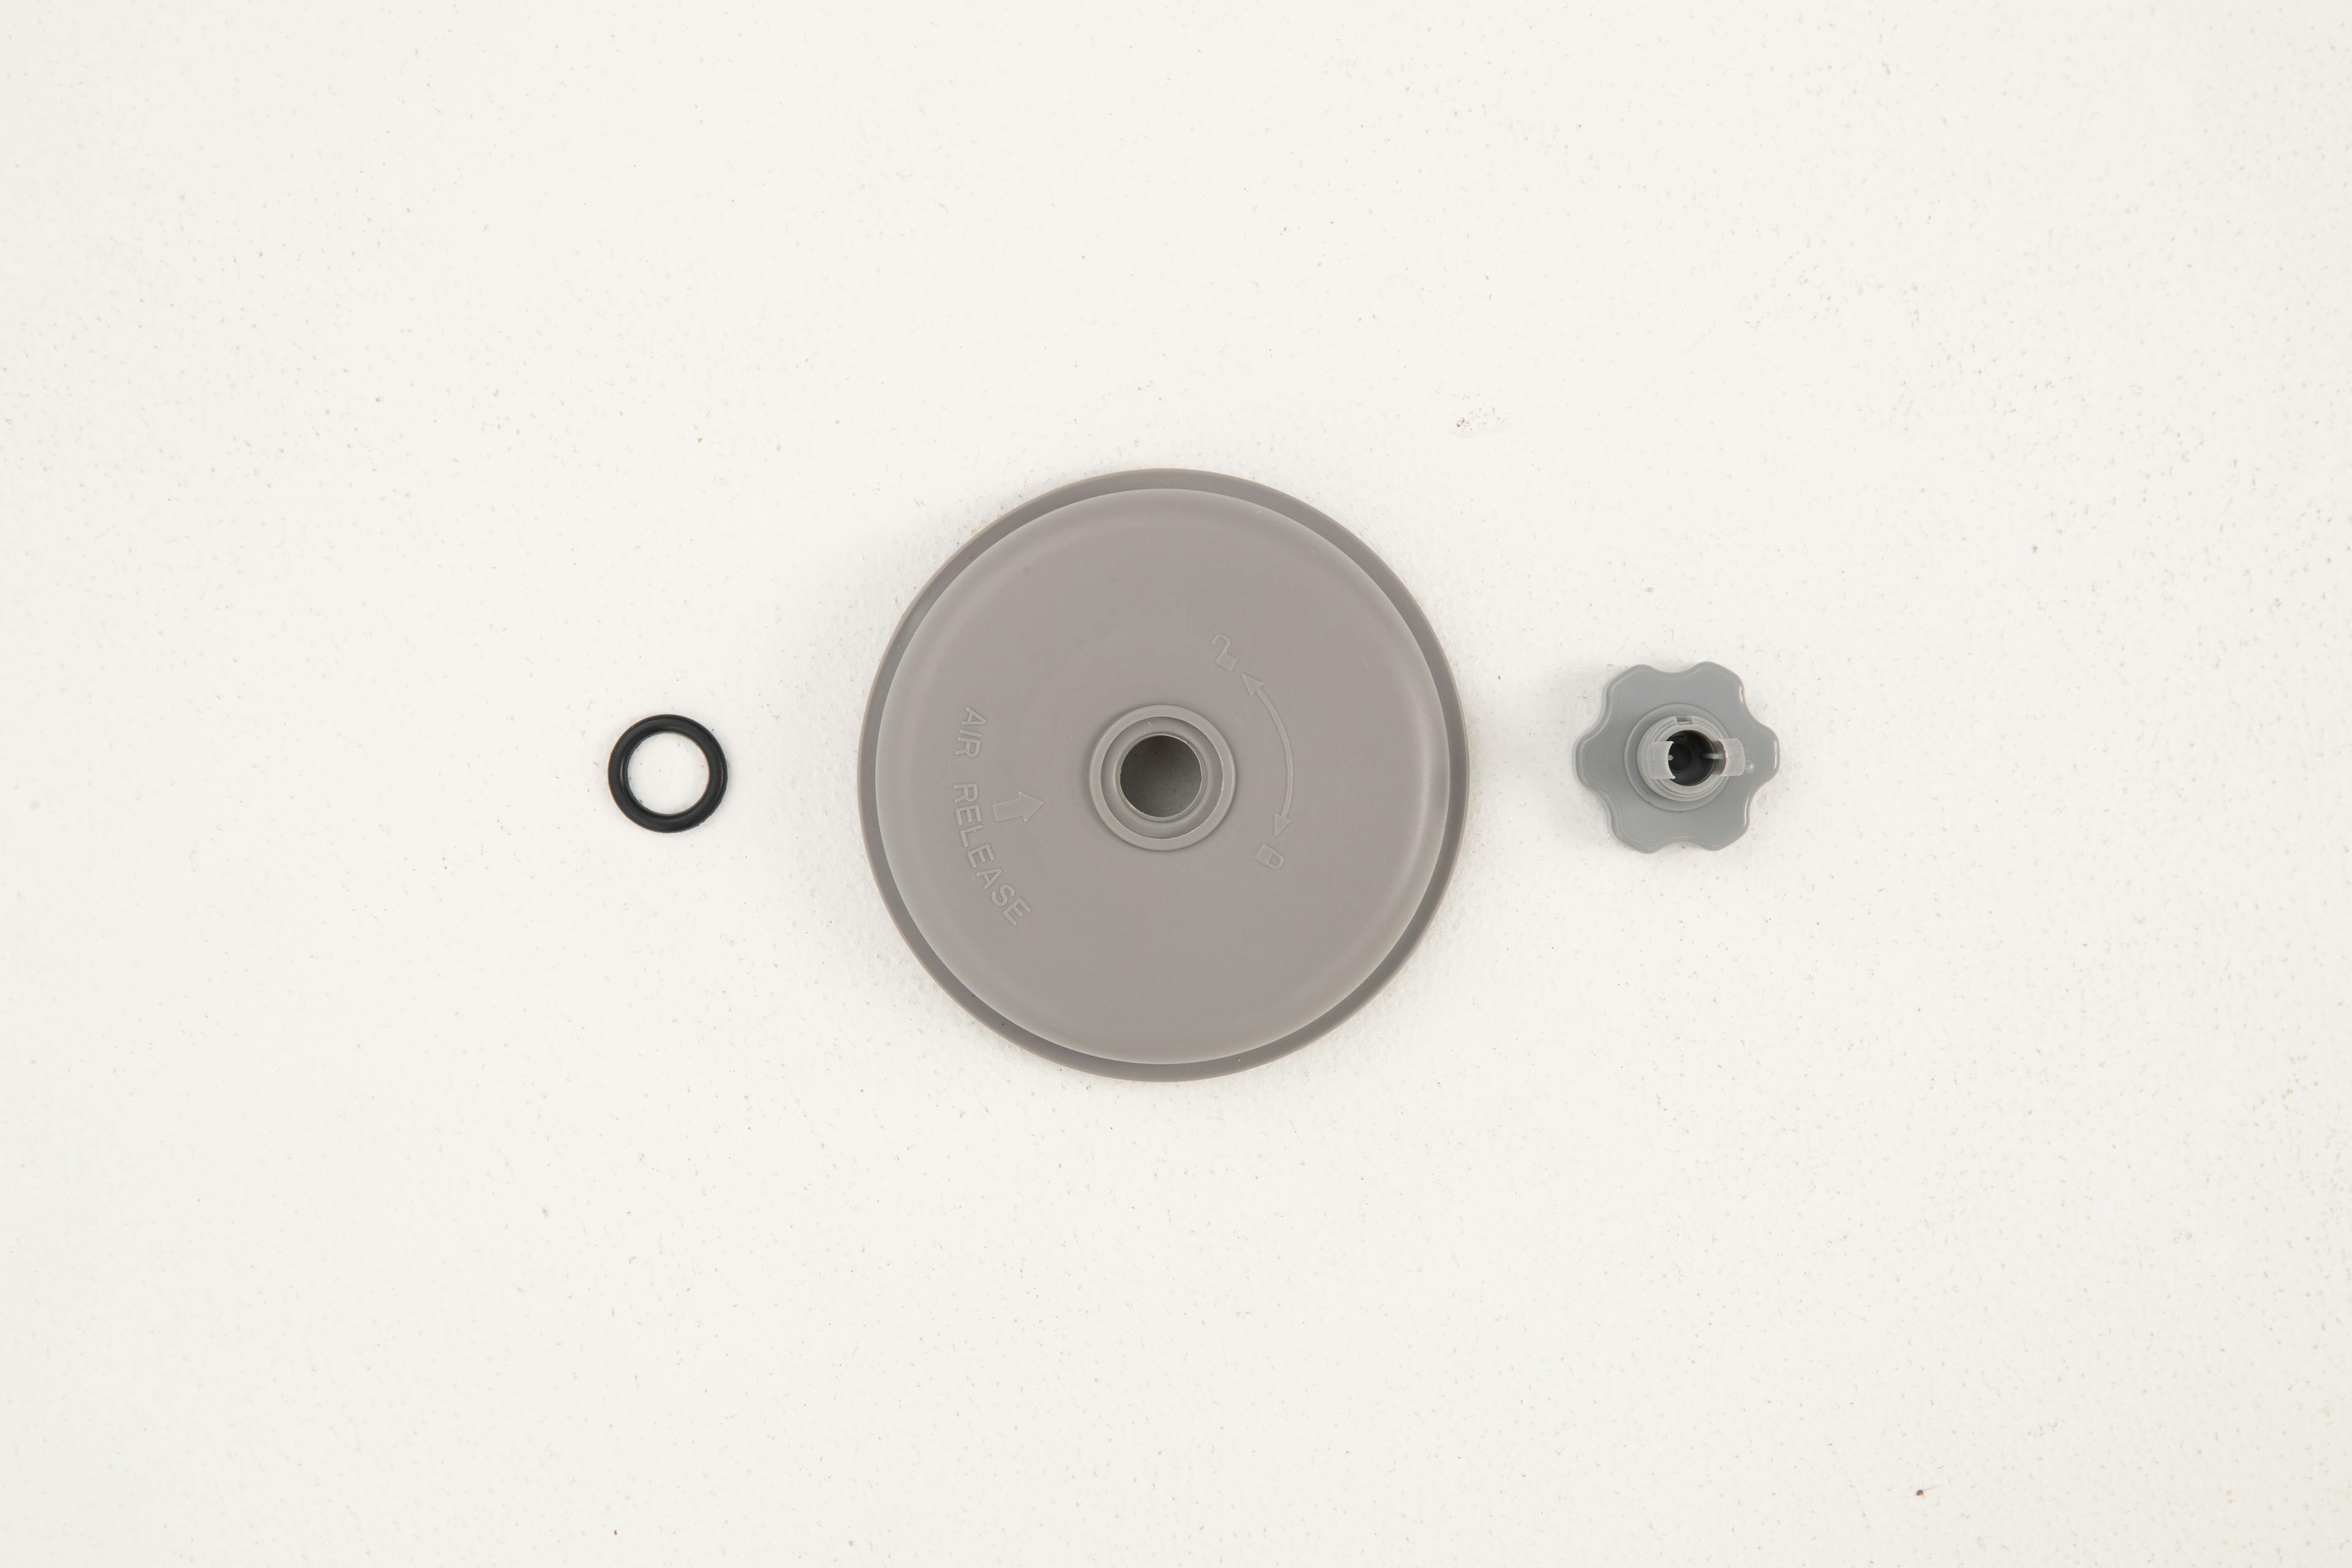 Valvola di sfiato + guarnizione ad anello + coperchio per pompa filtro a cartuccia da 2.006/3.028/5.678 l/h